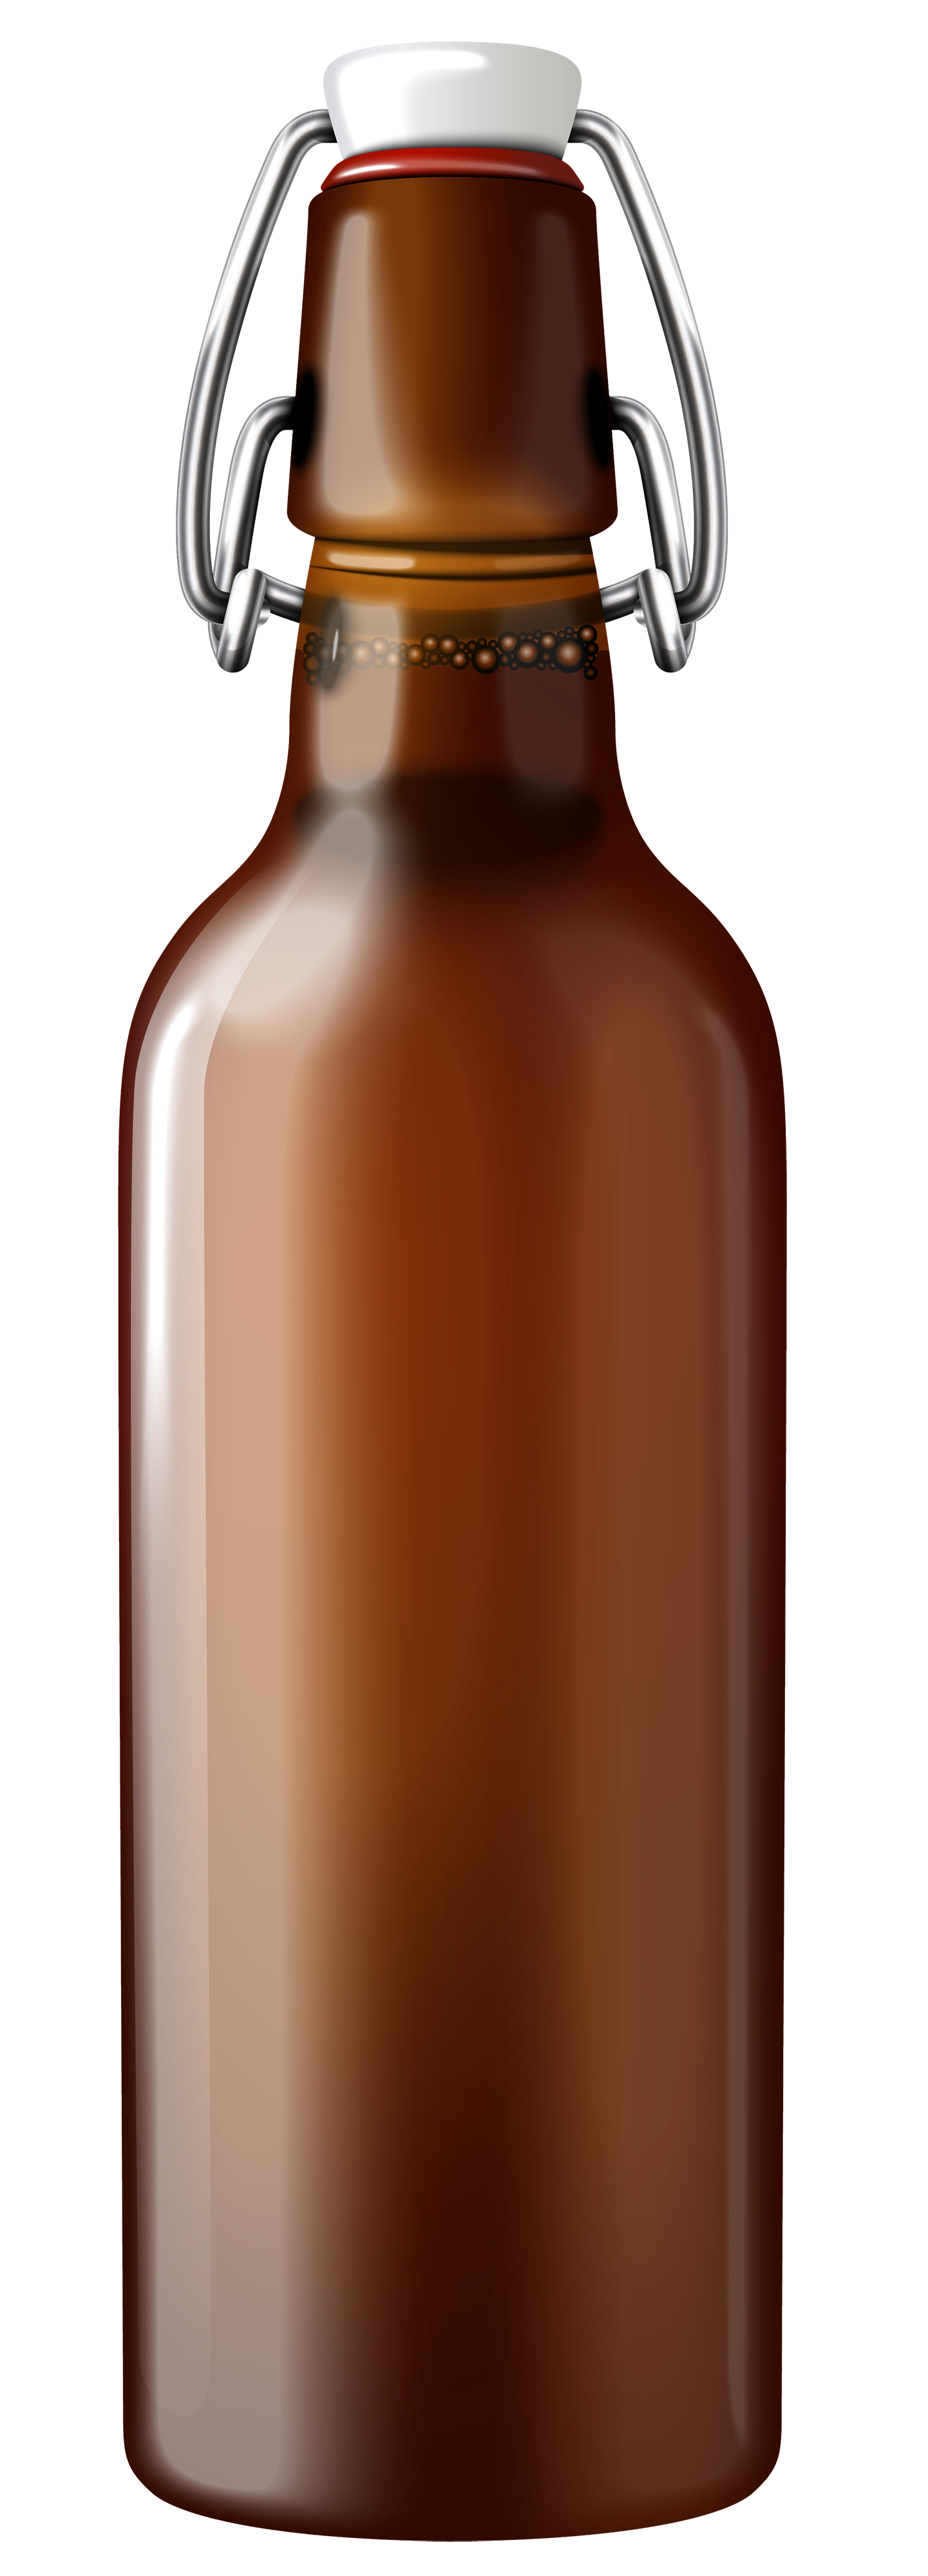 Bear Bottle Background PNG